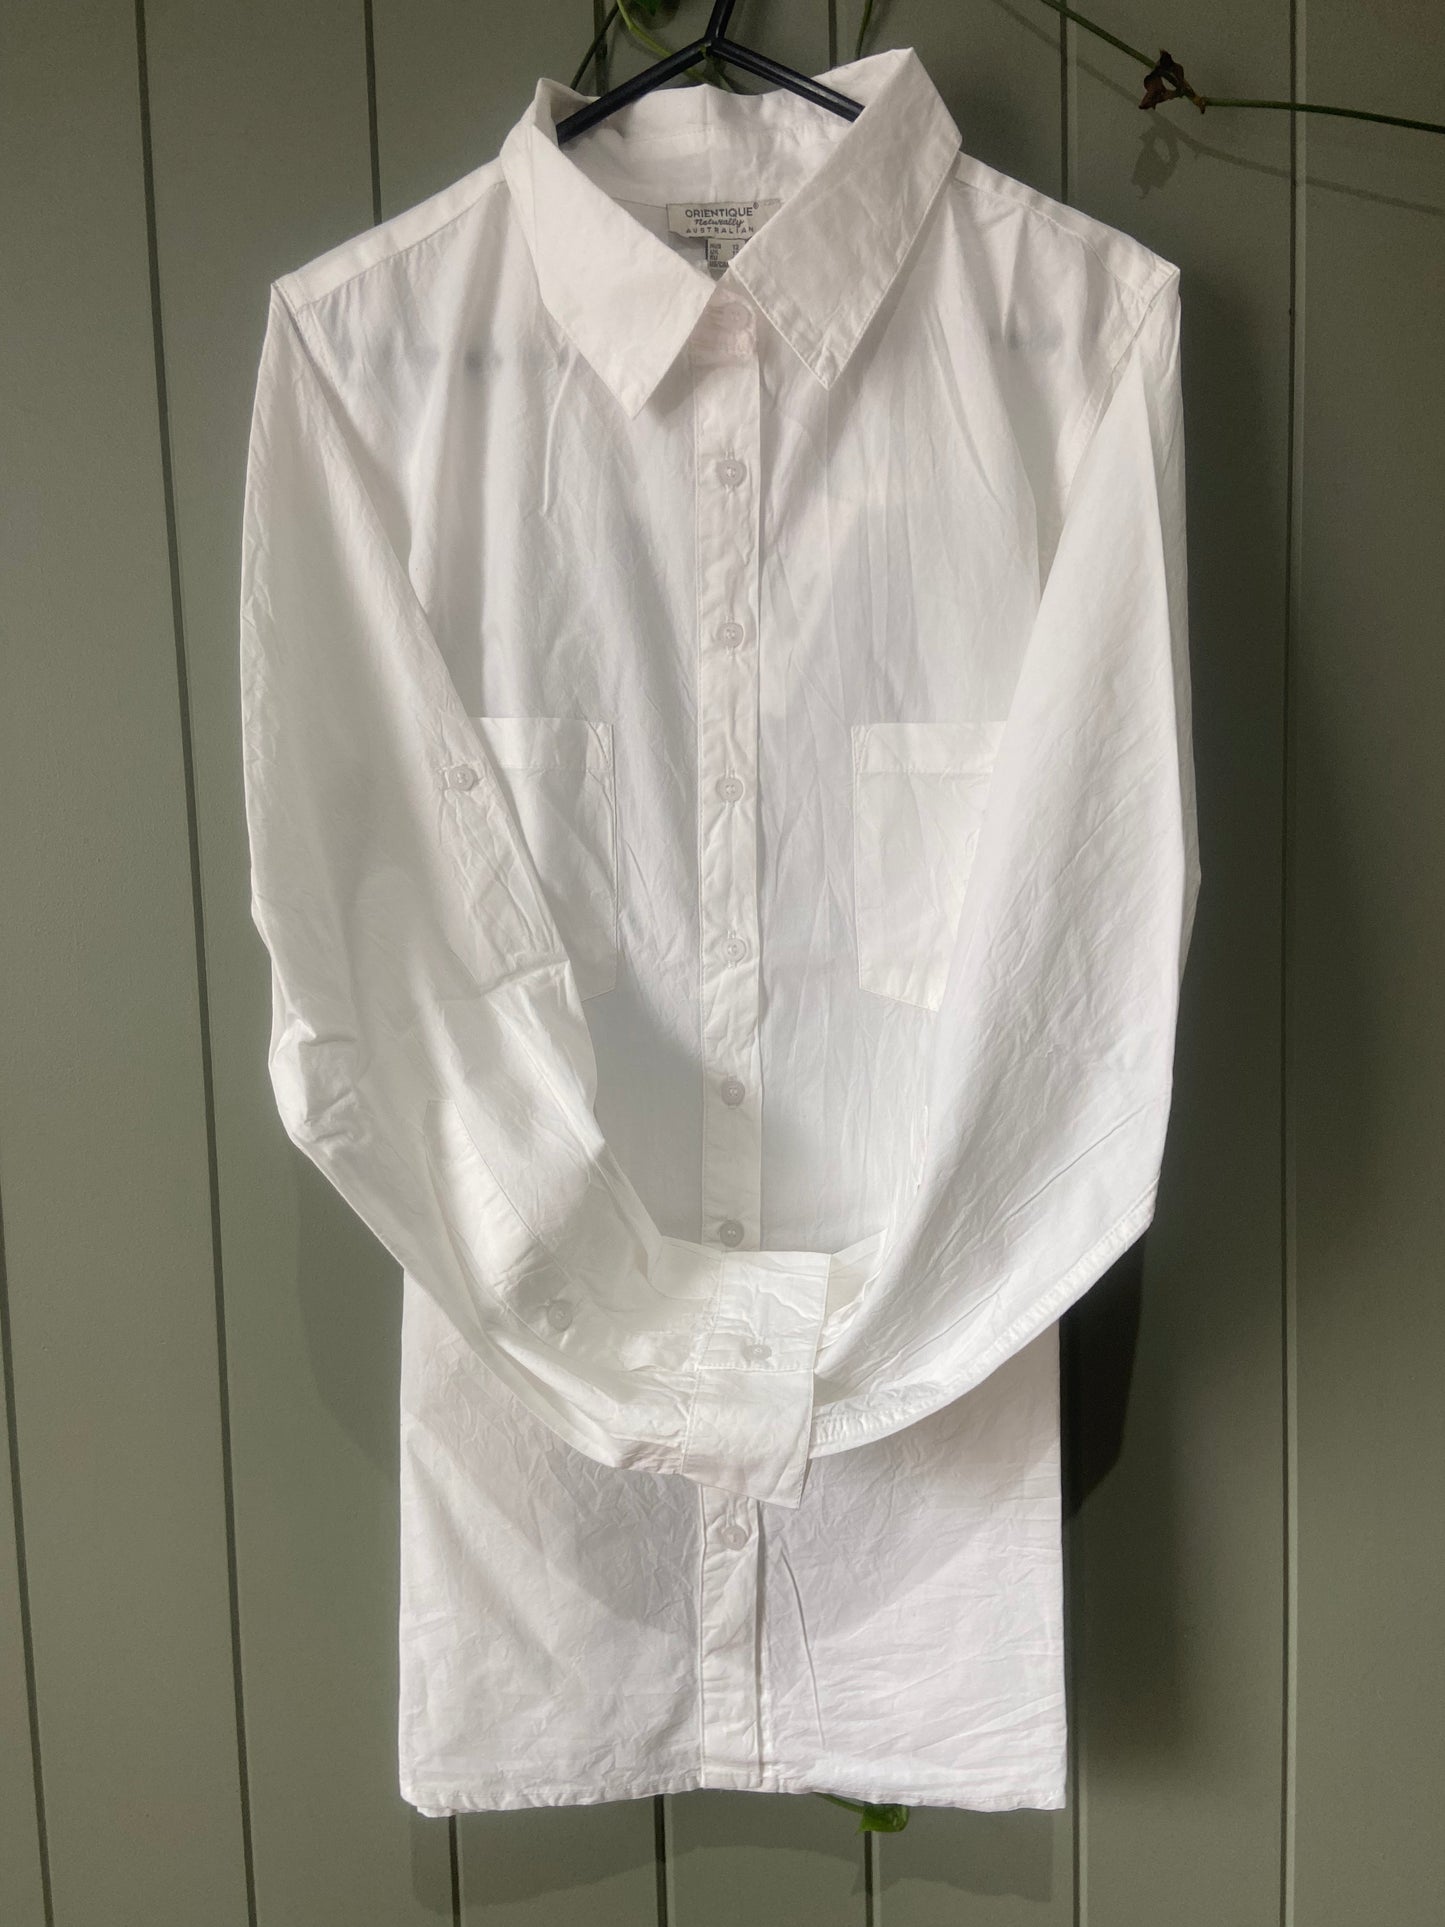 Basic white shirt